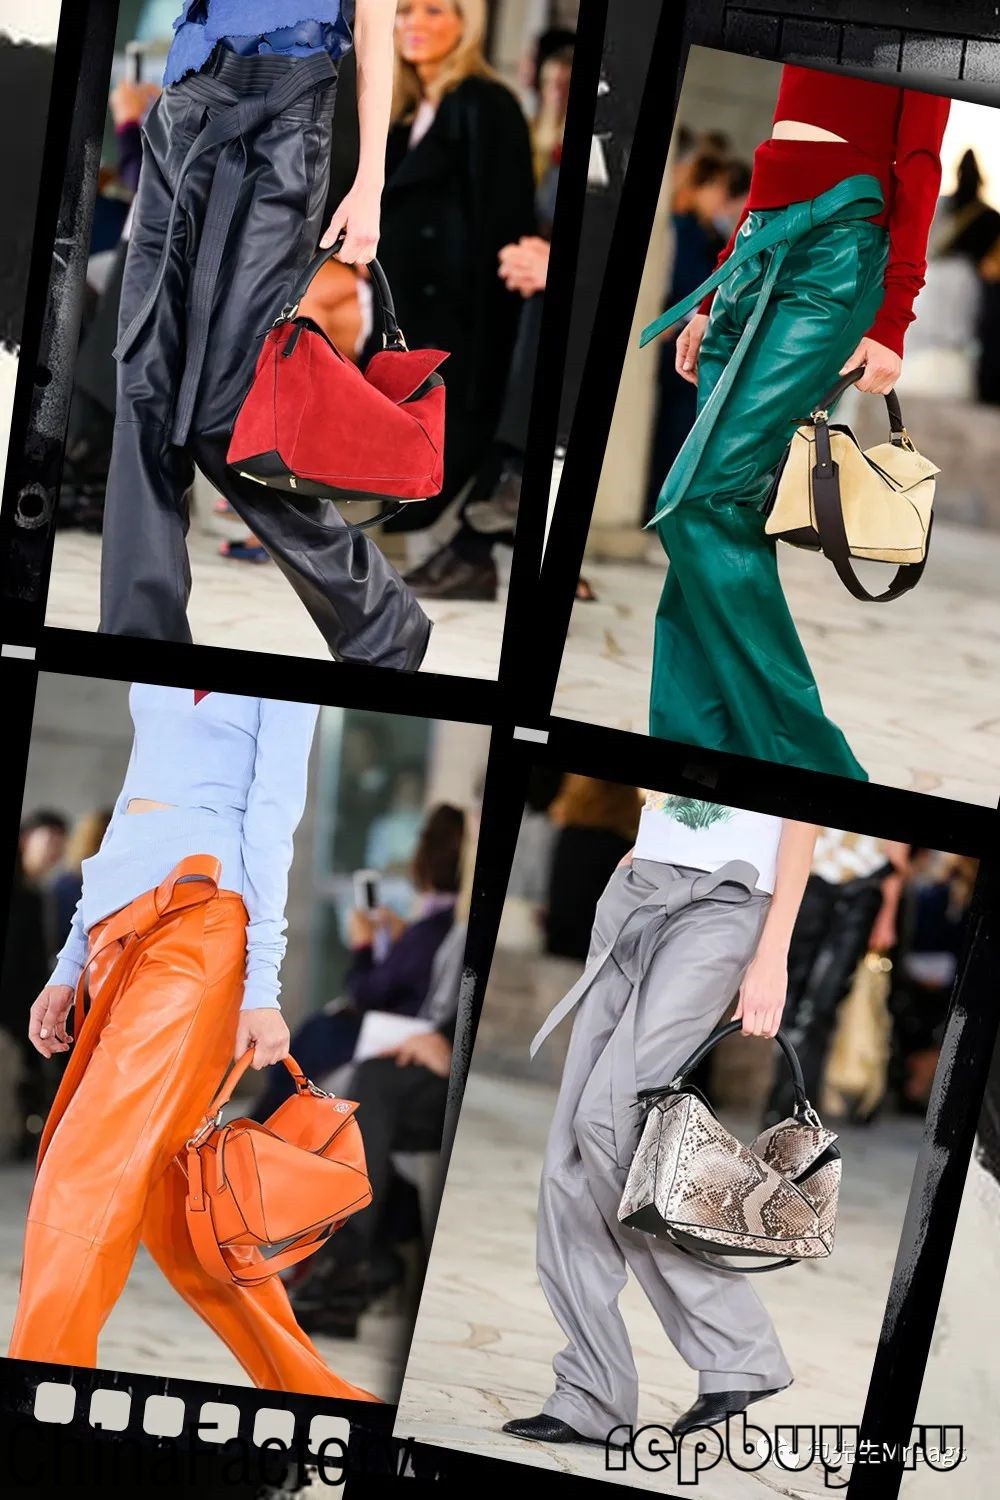 Топ-5 найпопулярніших високоякісних сумок-копій (оновлено в 2022 році) - Інтернет-магазин підробленої сумки Louis Vuitton найкращої якості, копія дизайнерської сумки ru